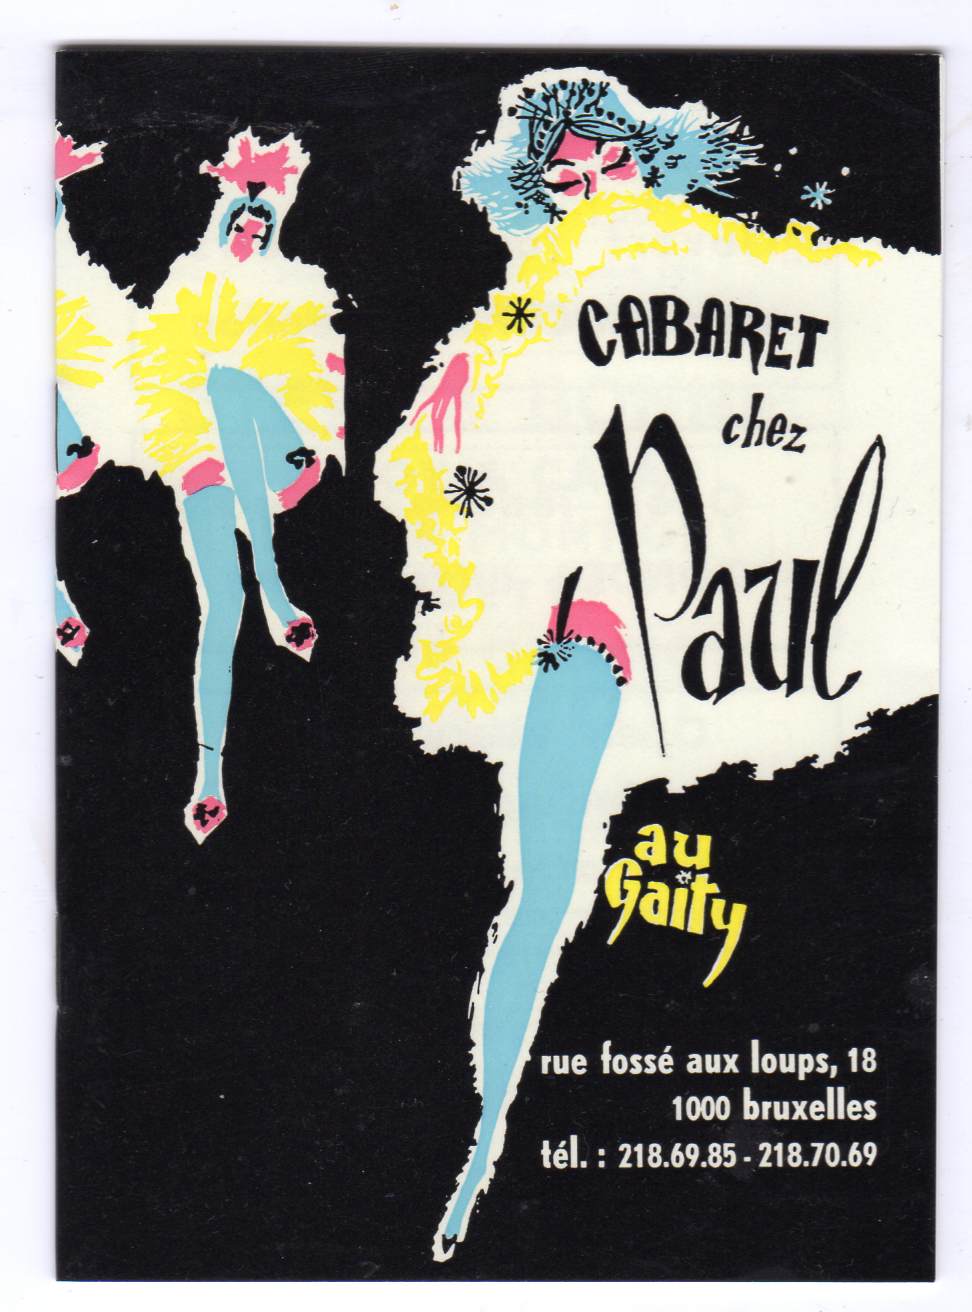 Cabaret chez Paul au Gaity hefte